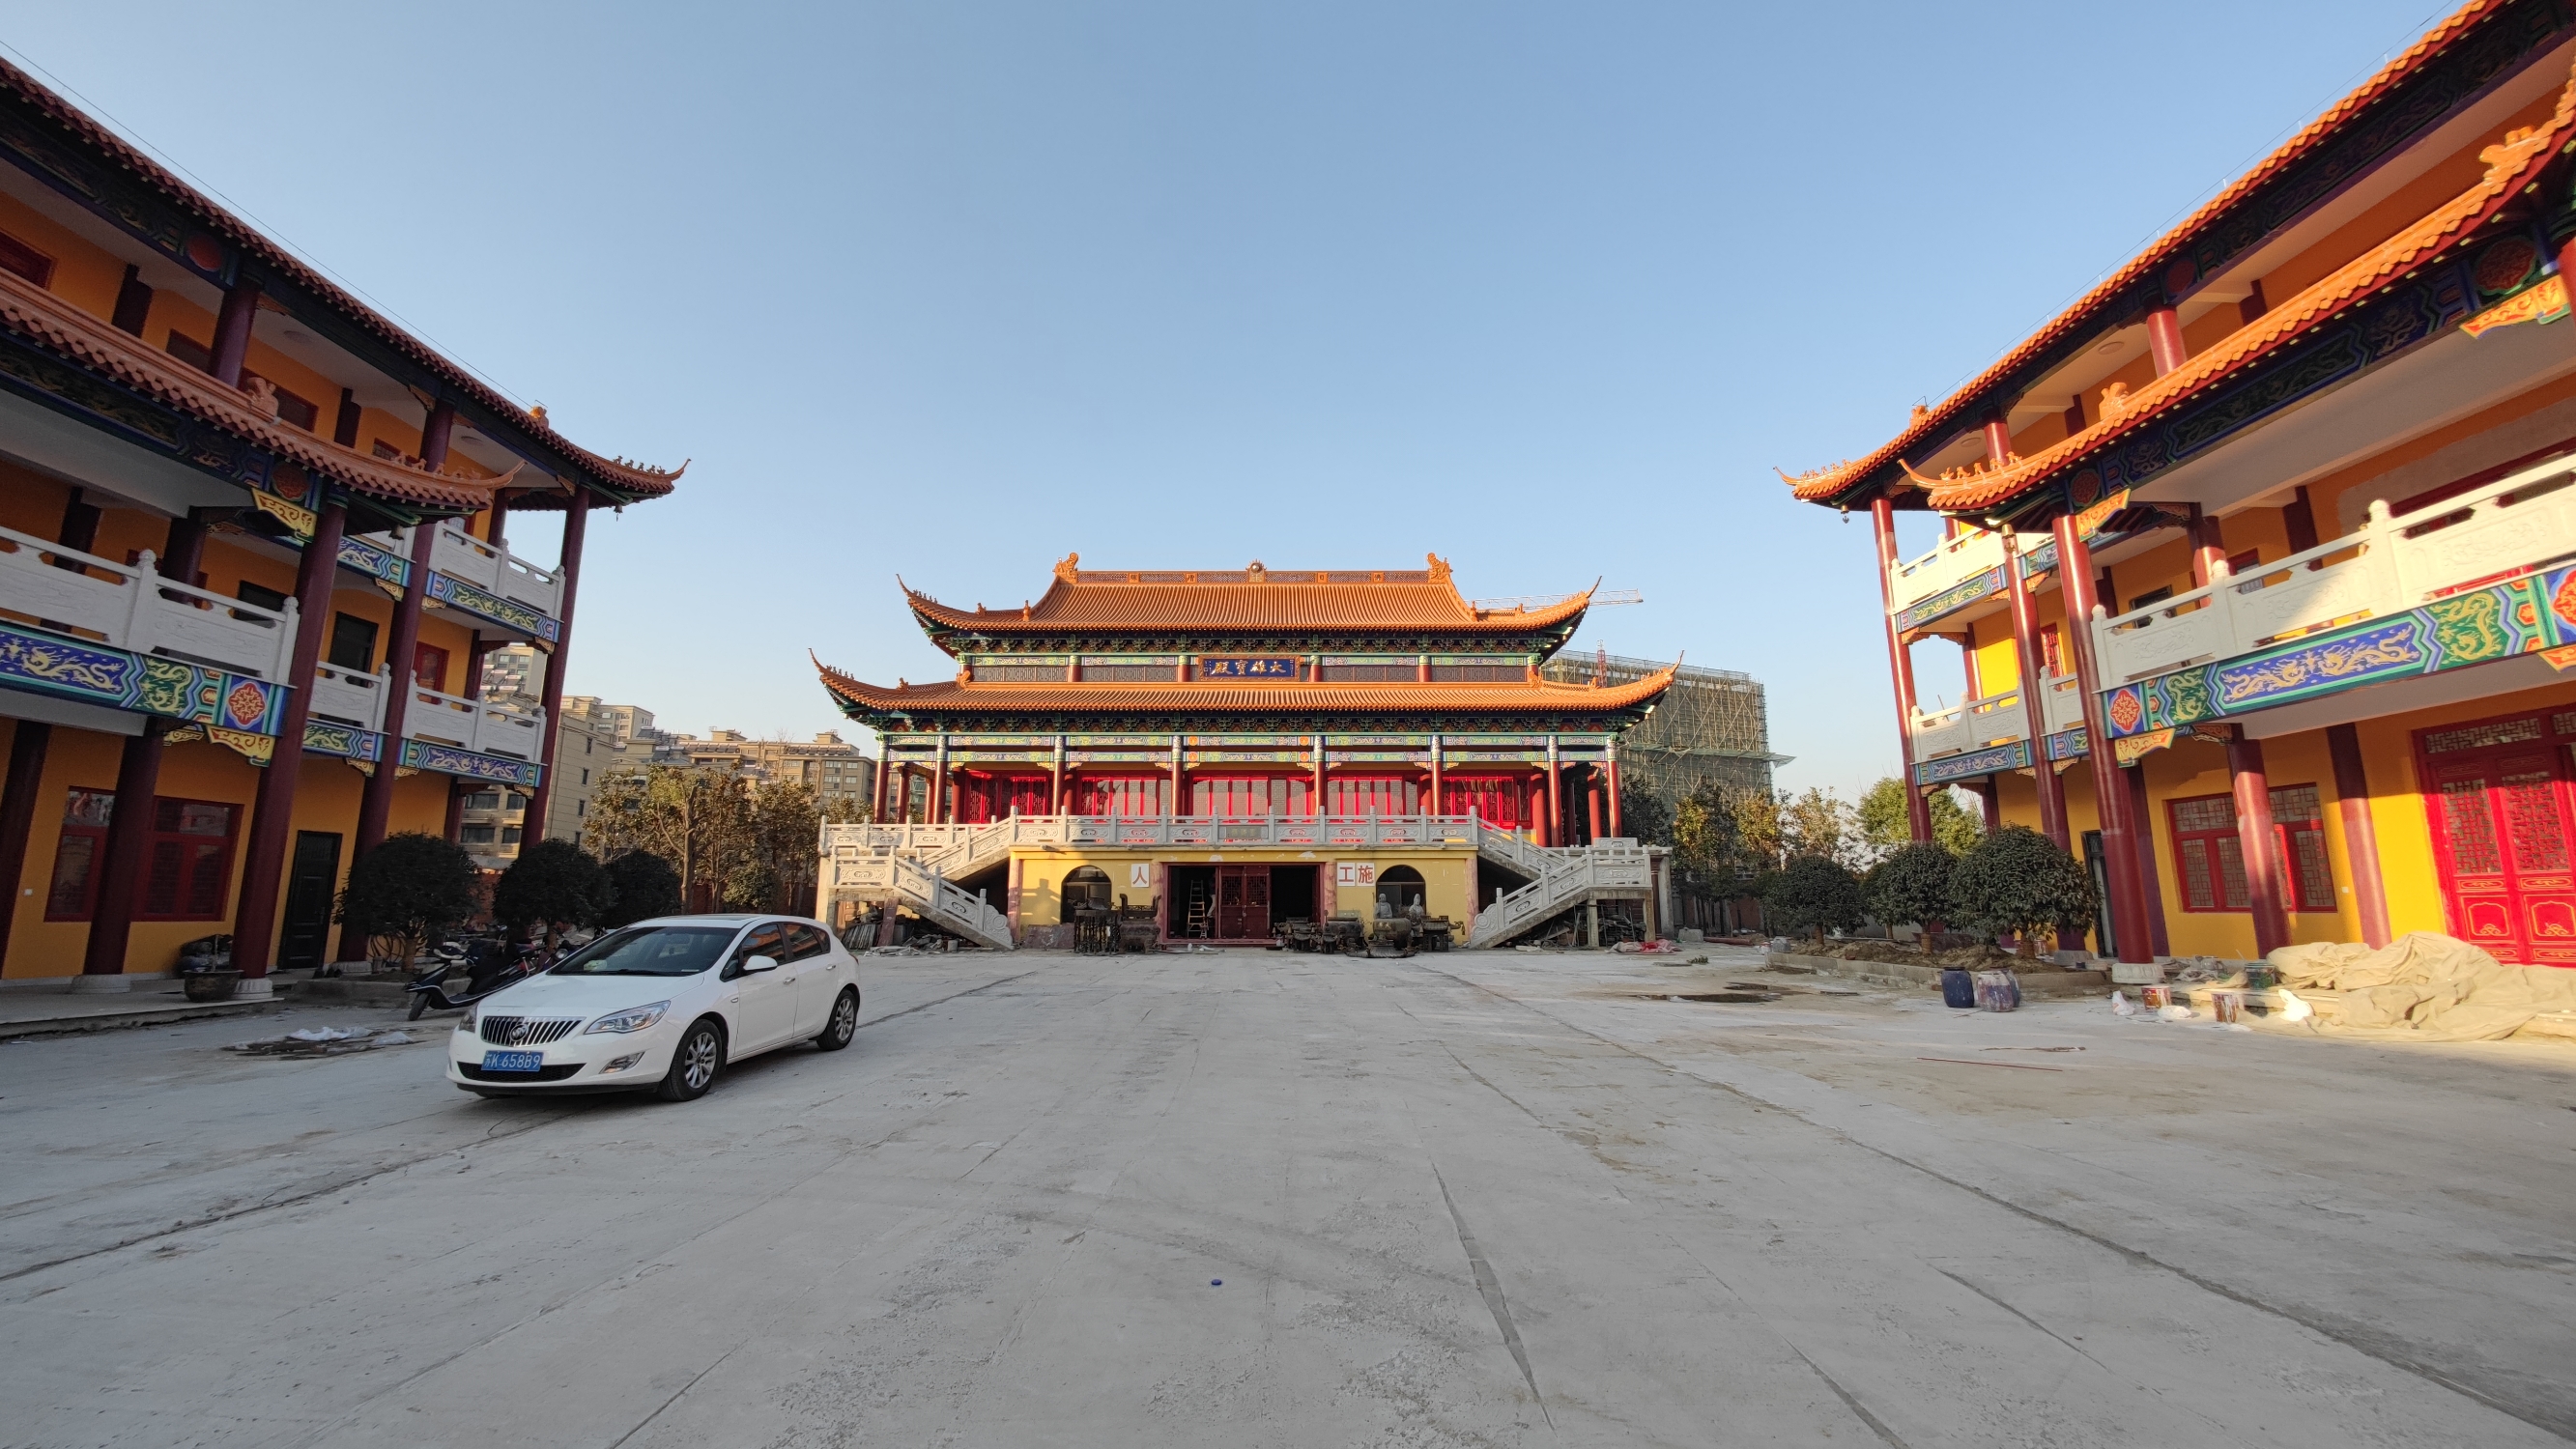 #冬日漫游指南 扬州大佛寺位于扬州市区，是一座历史悠久、文化底蕴深厚的佛教寺庙。  扬州大佛寺建于唐